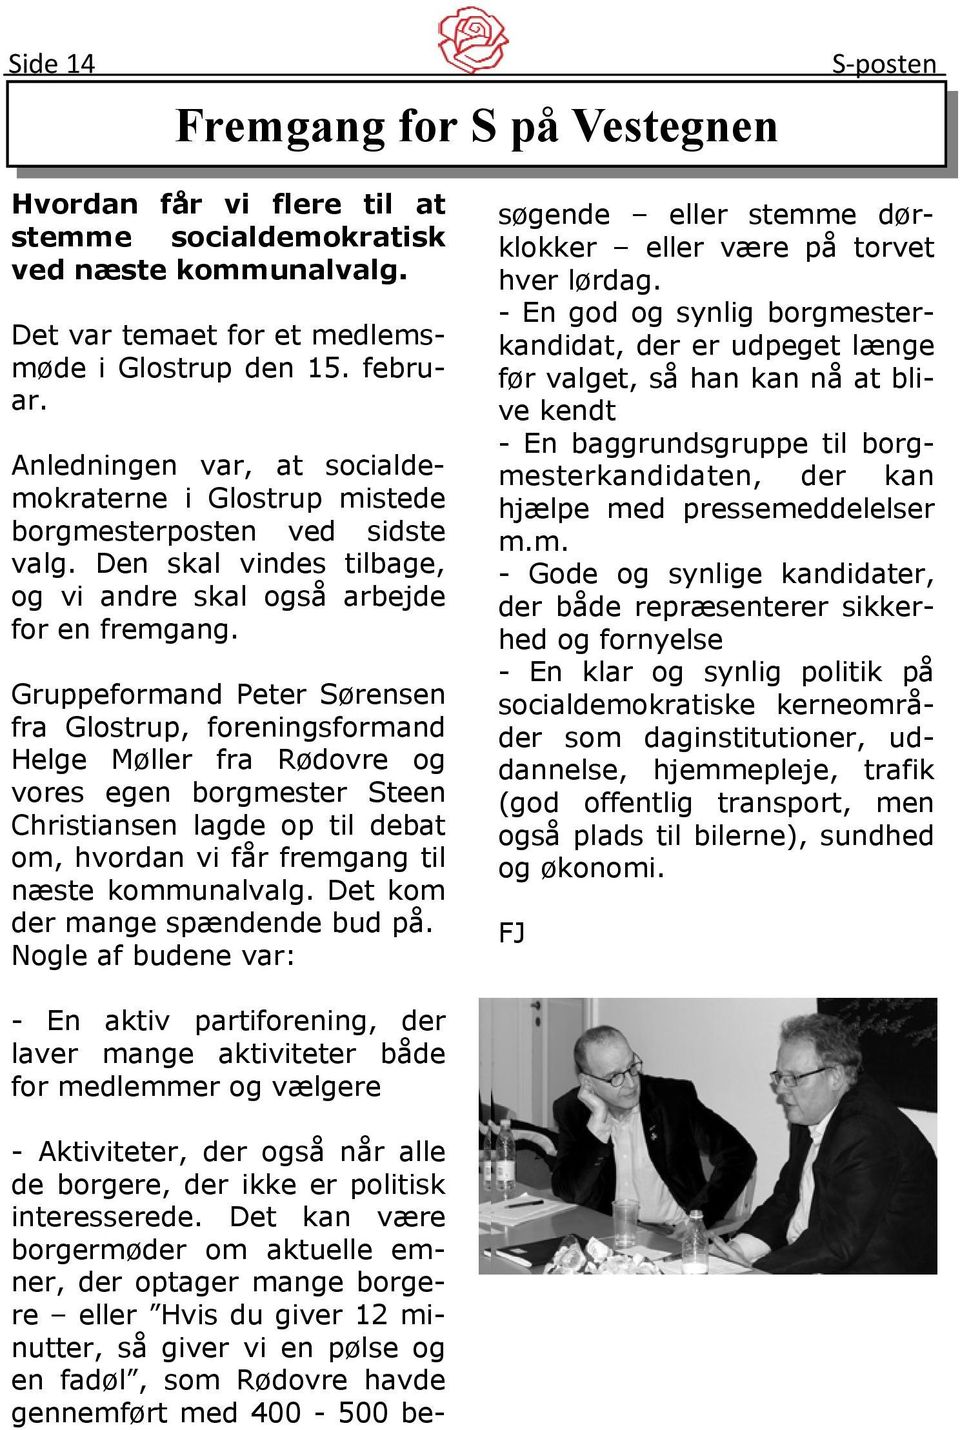 Gruppeformand Peter Sørensen fra Glostrup, foreningsformand Helge Møller fra Rødovre og vores egen borgmester Steen Christiansen lagde op til debat om, hvordan vi får fremgang til næste kommunalvalg.